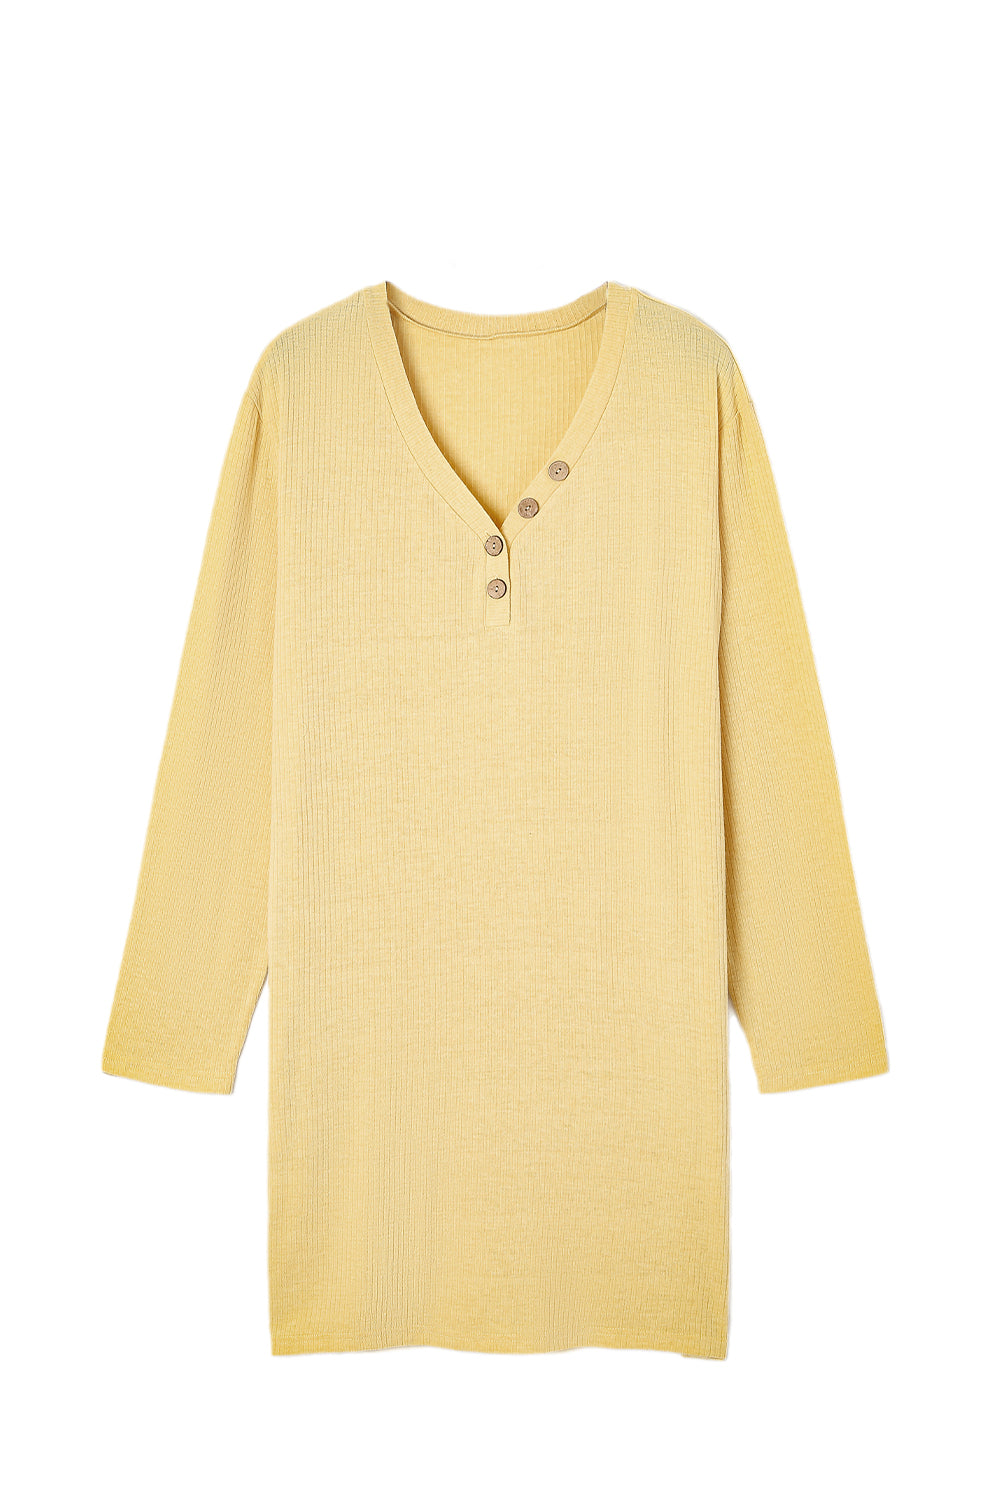 Gelbes, geripptes Henley-Kleid mit langen Ärmeln und Taschen in Übergröße